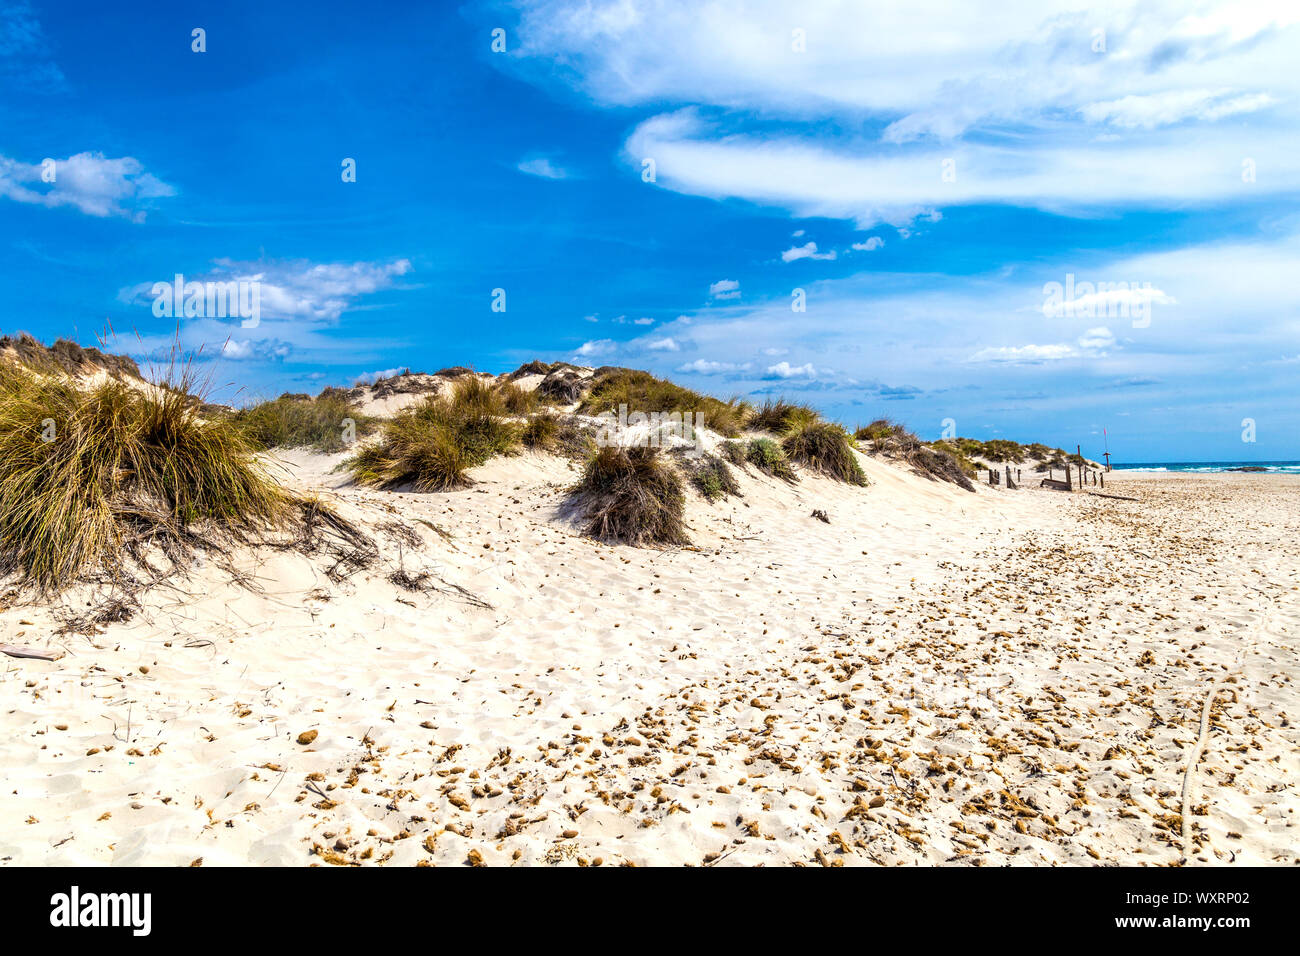 Protected sand dunes of the Parque Natural de las Salinas de Ibiza y Formentera, S'Espalmador, Balearic Islands, Spain Stock Photo